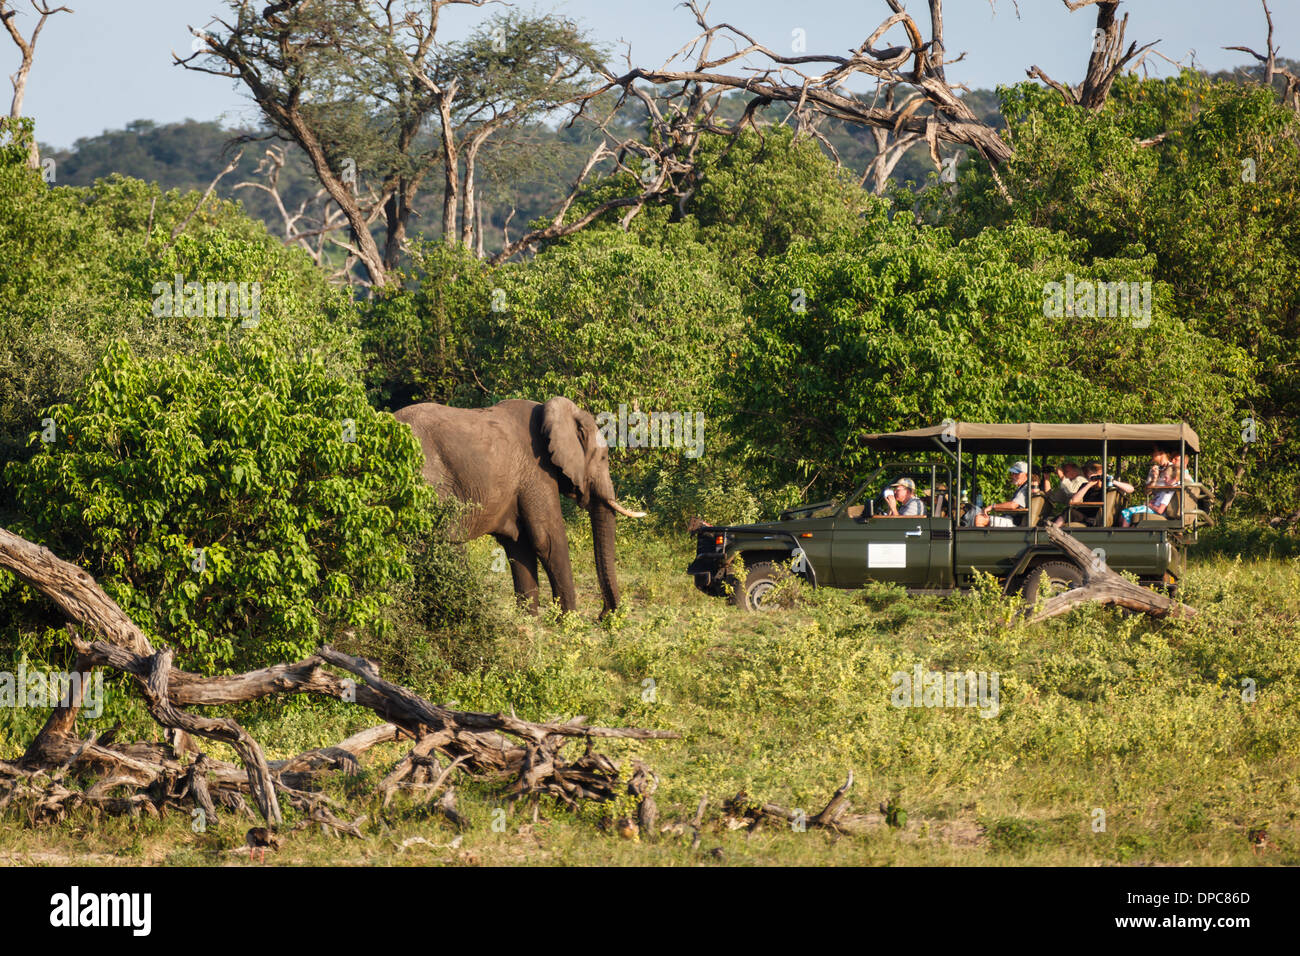 Les touristes dans le véhicule safari conduisent près de l'éléphant sauvage au Botswana, en Afrique Banque D'Images